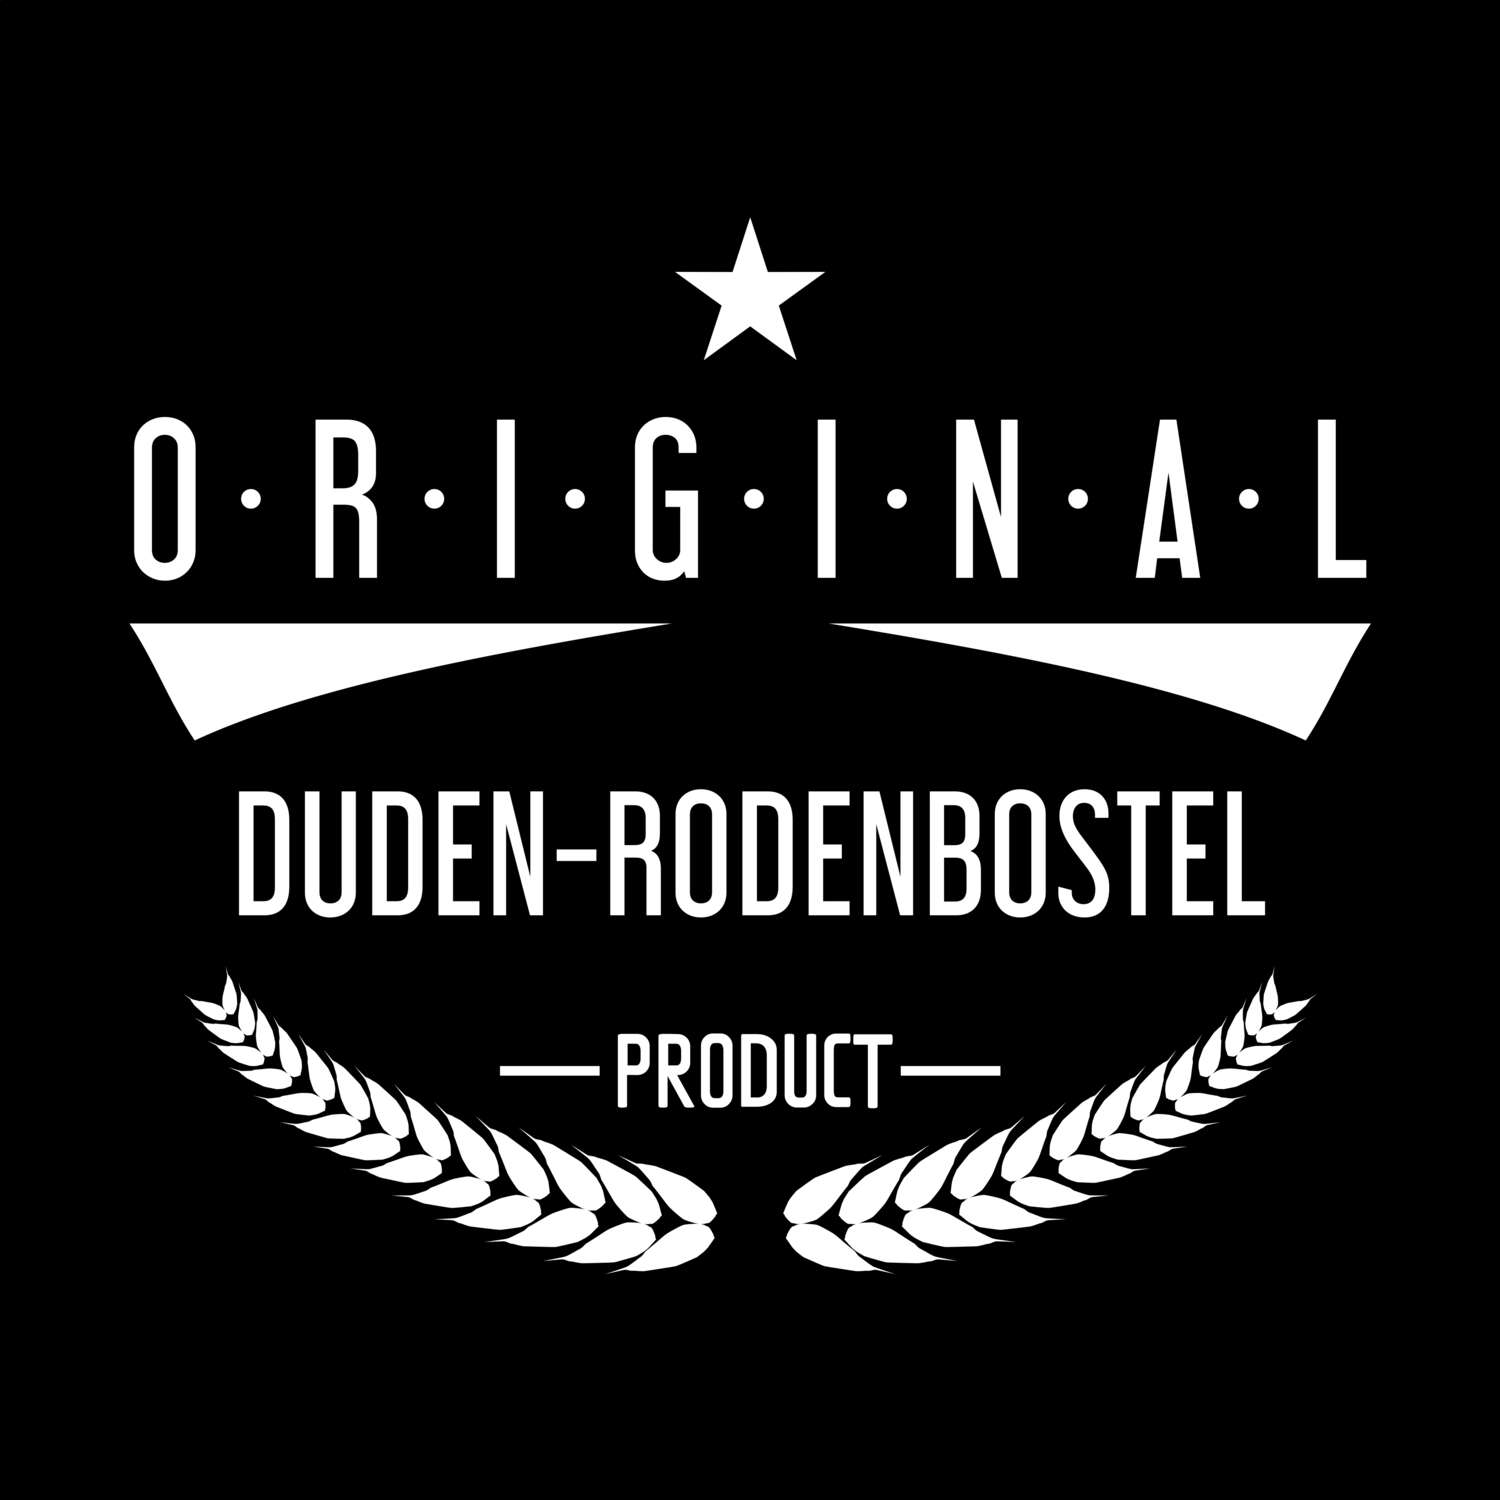 Duden-Rodenbostel T-Shirt »Original Product«